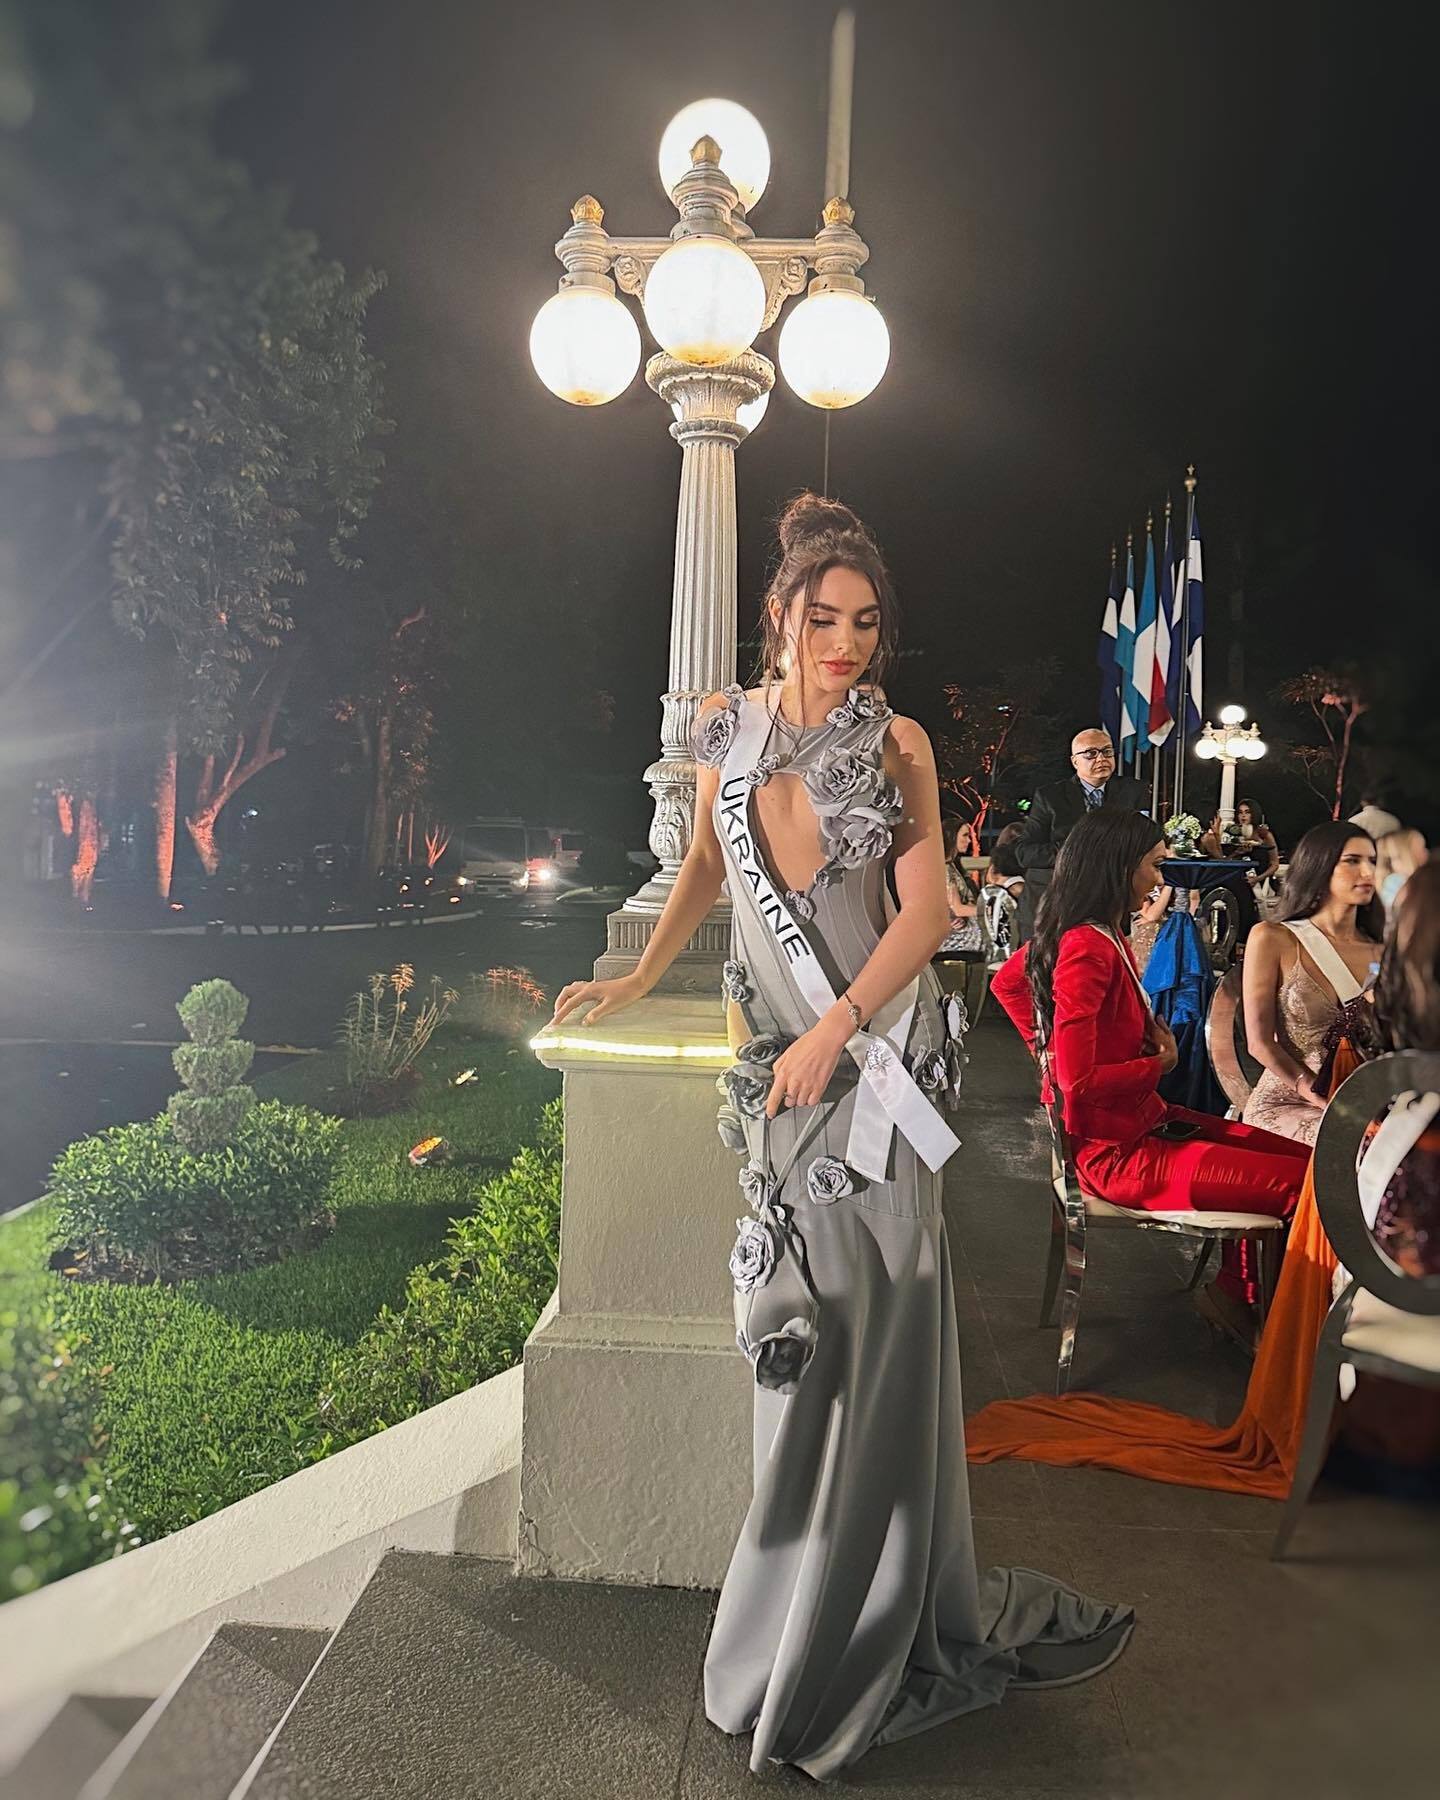 Ангеліна Усанова у півфіналі "Міс Всесвіт" гідно представила Україну: сукня "Фенікс", дефіле в купальнику та особлива відзнака